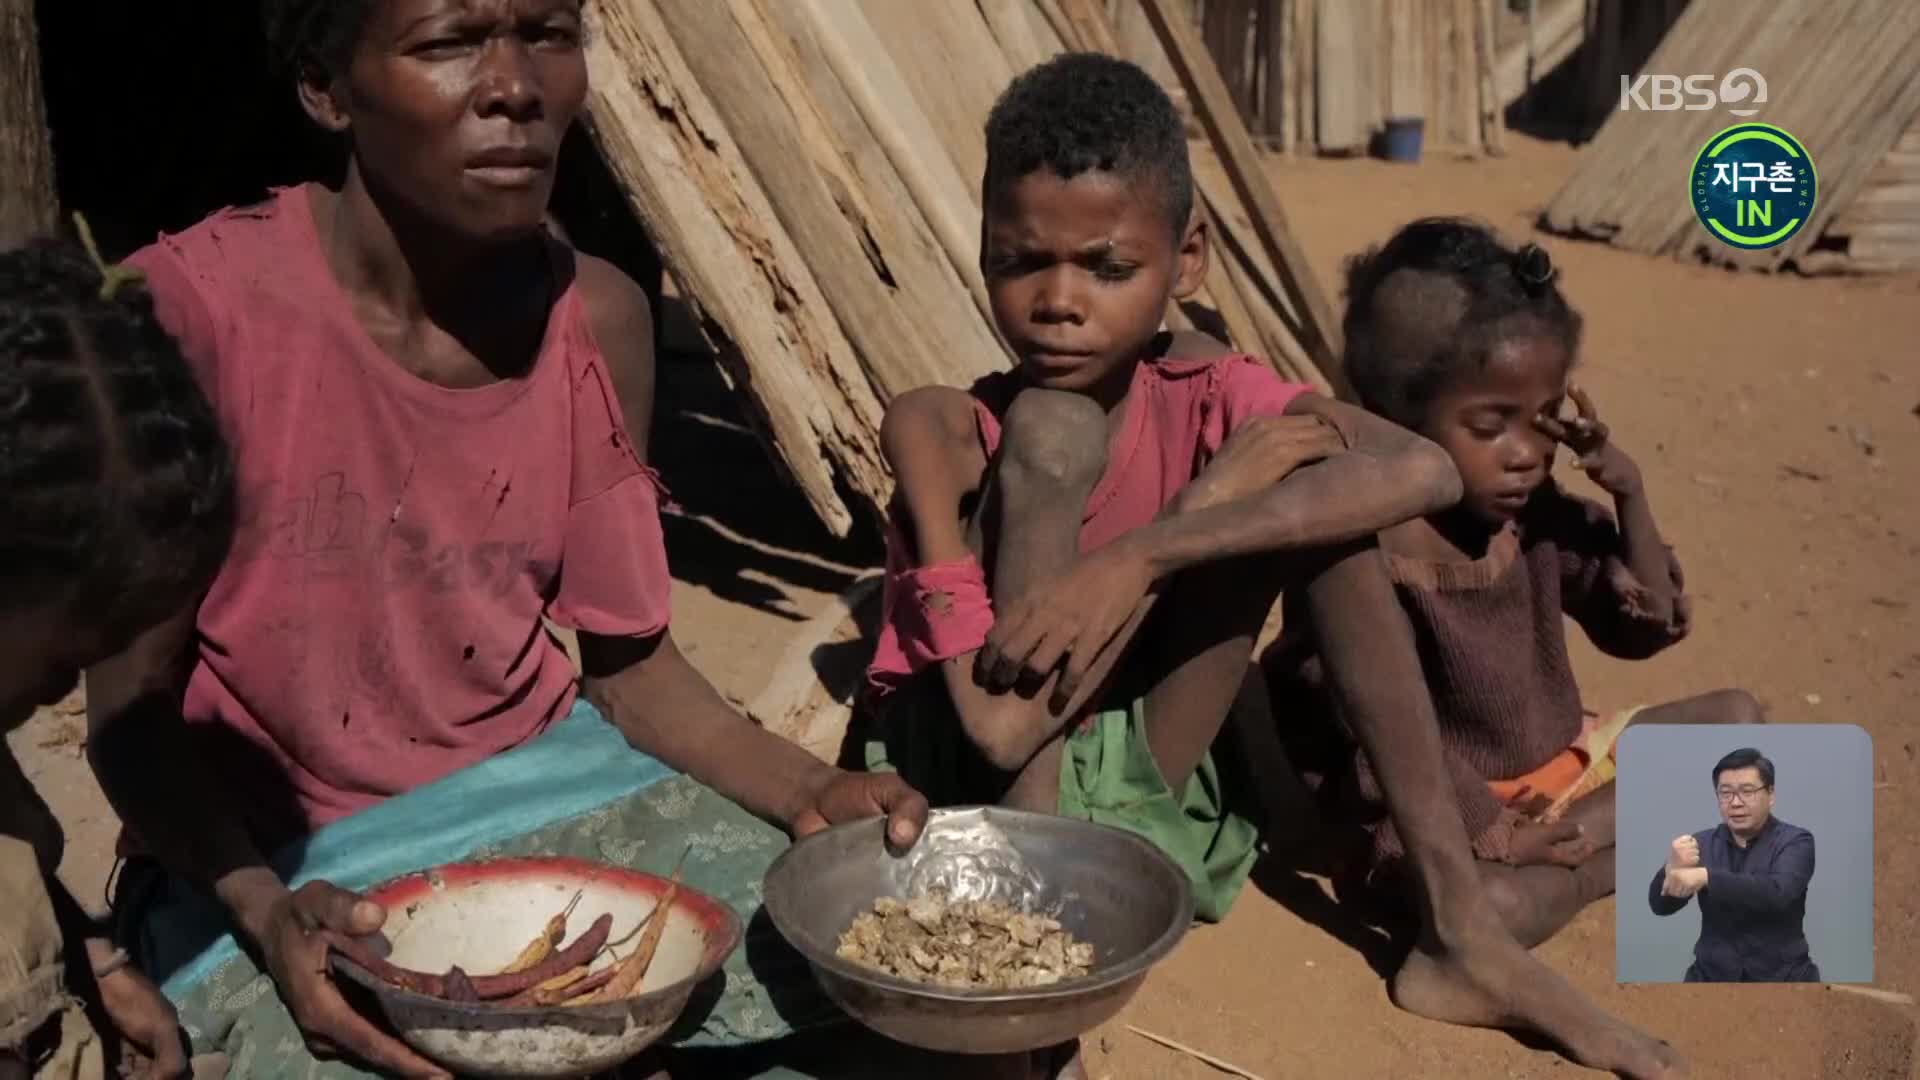 [지구촌 IN] 기후위기 최전선, 아프리카의 목소리